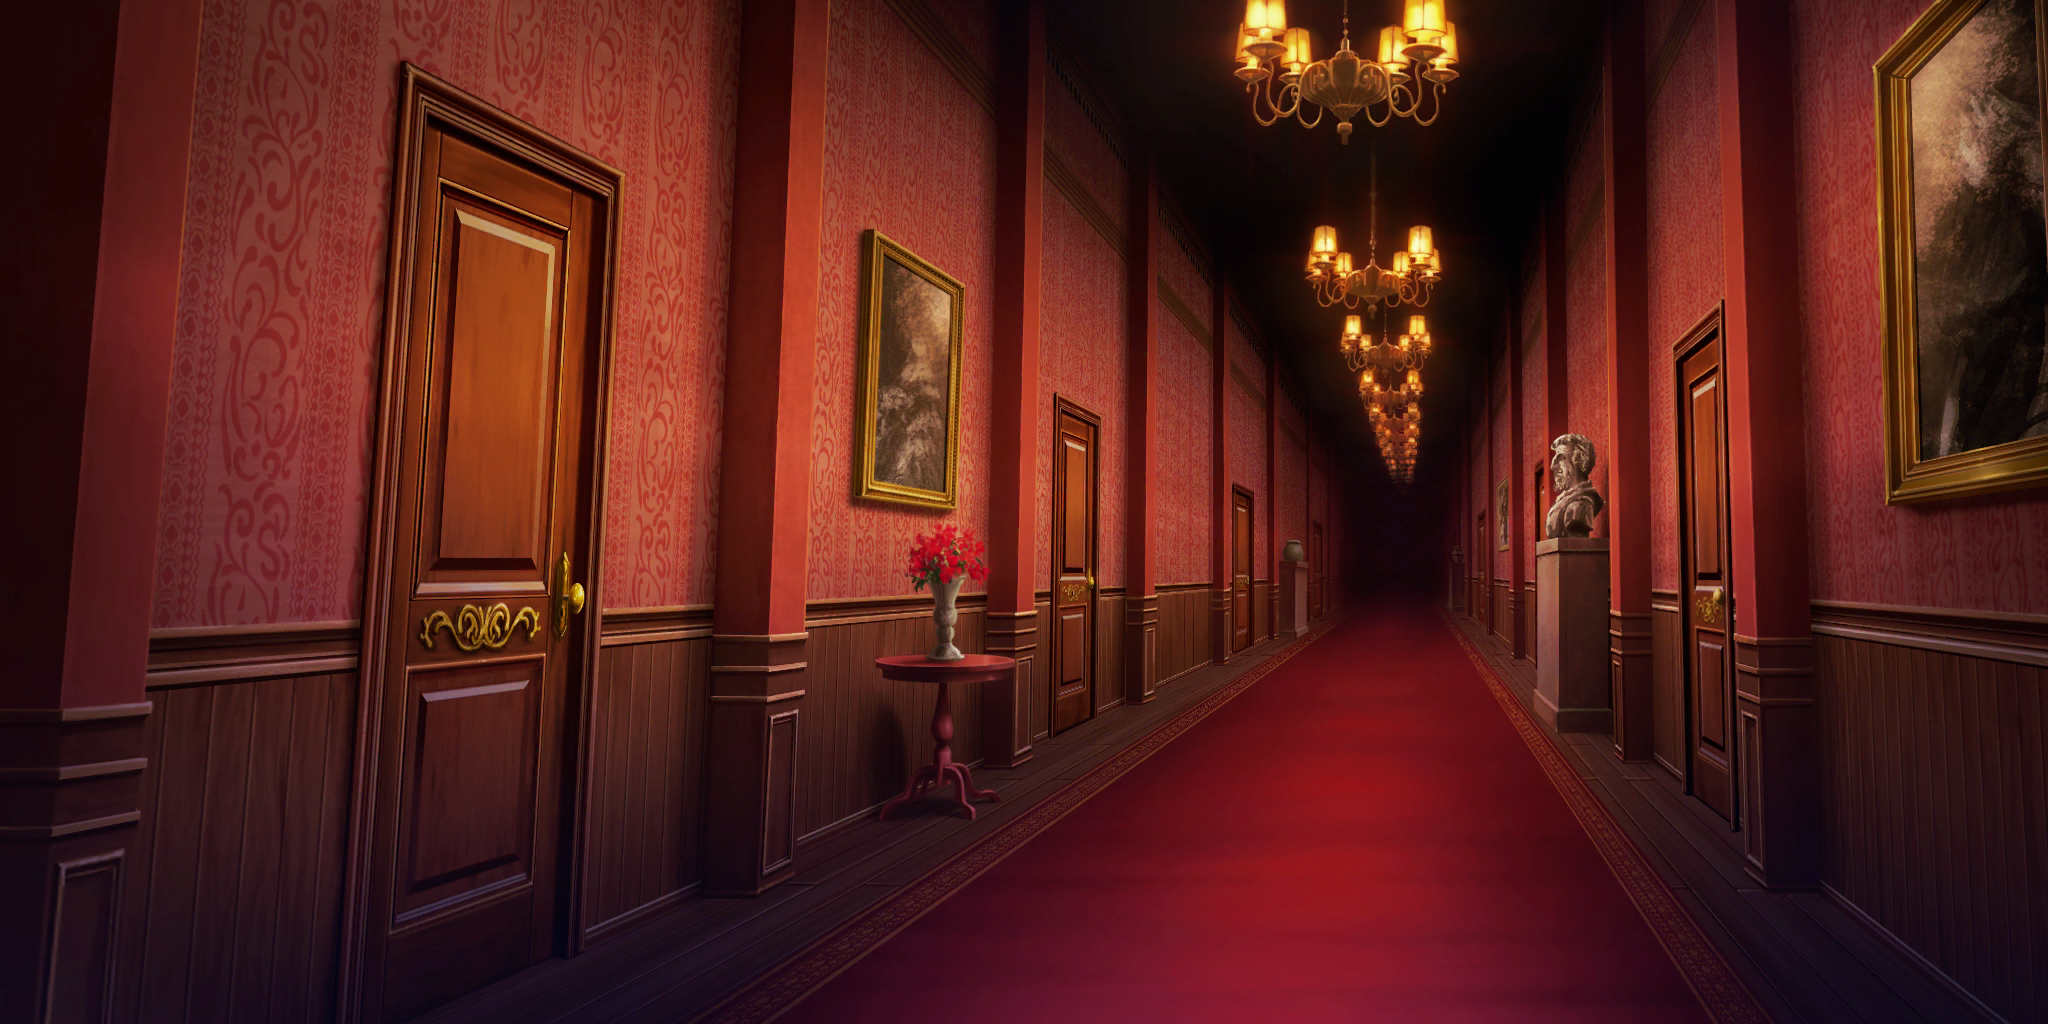 Scarlet Devil Mansion Hallway